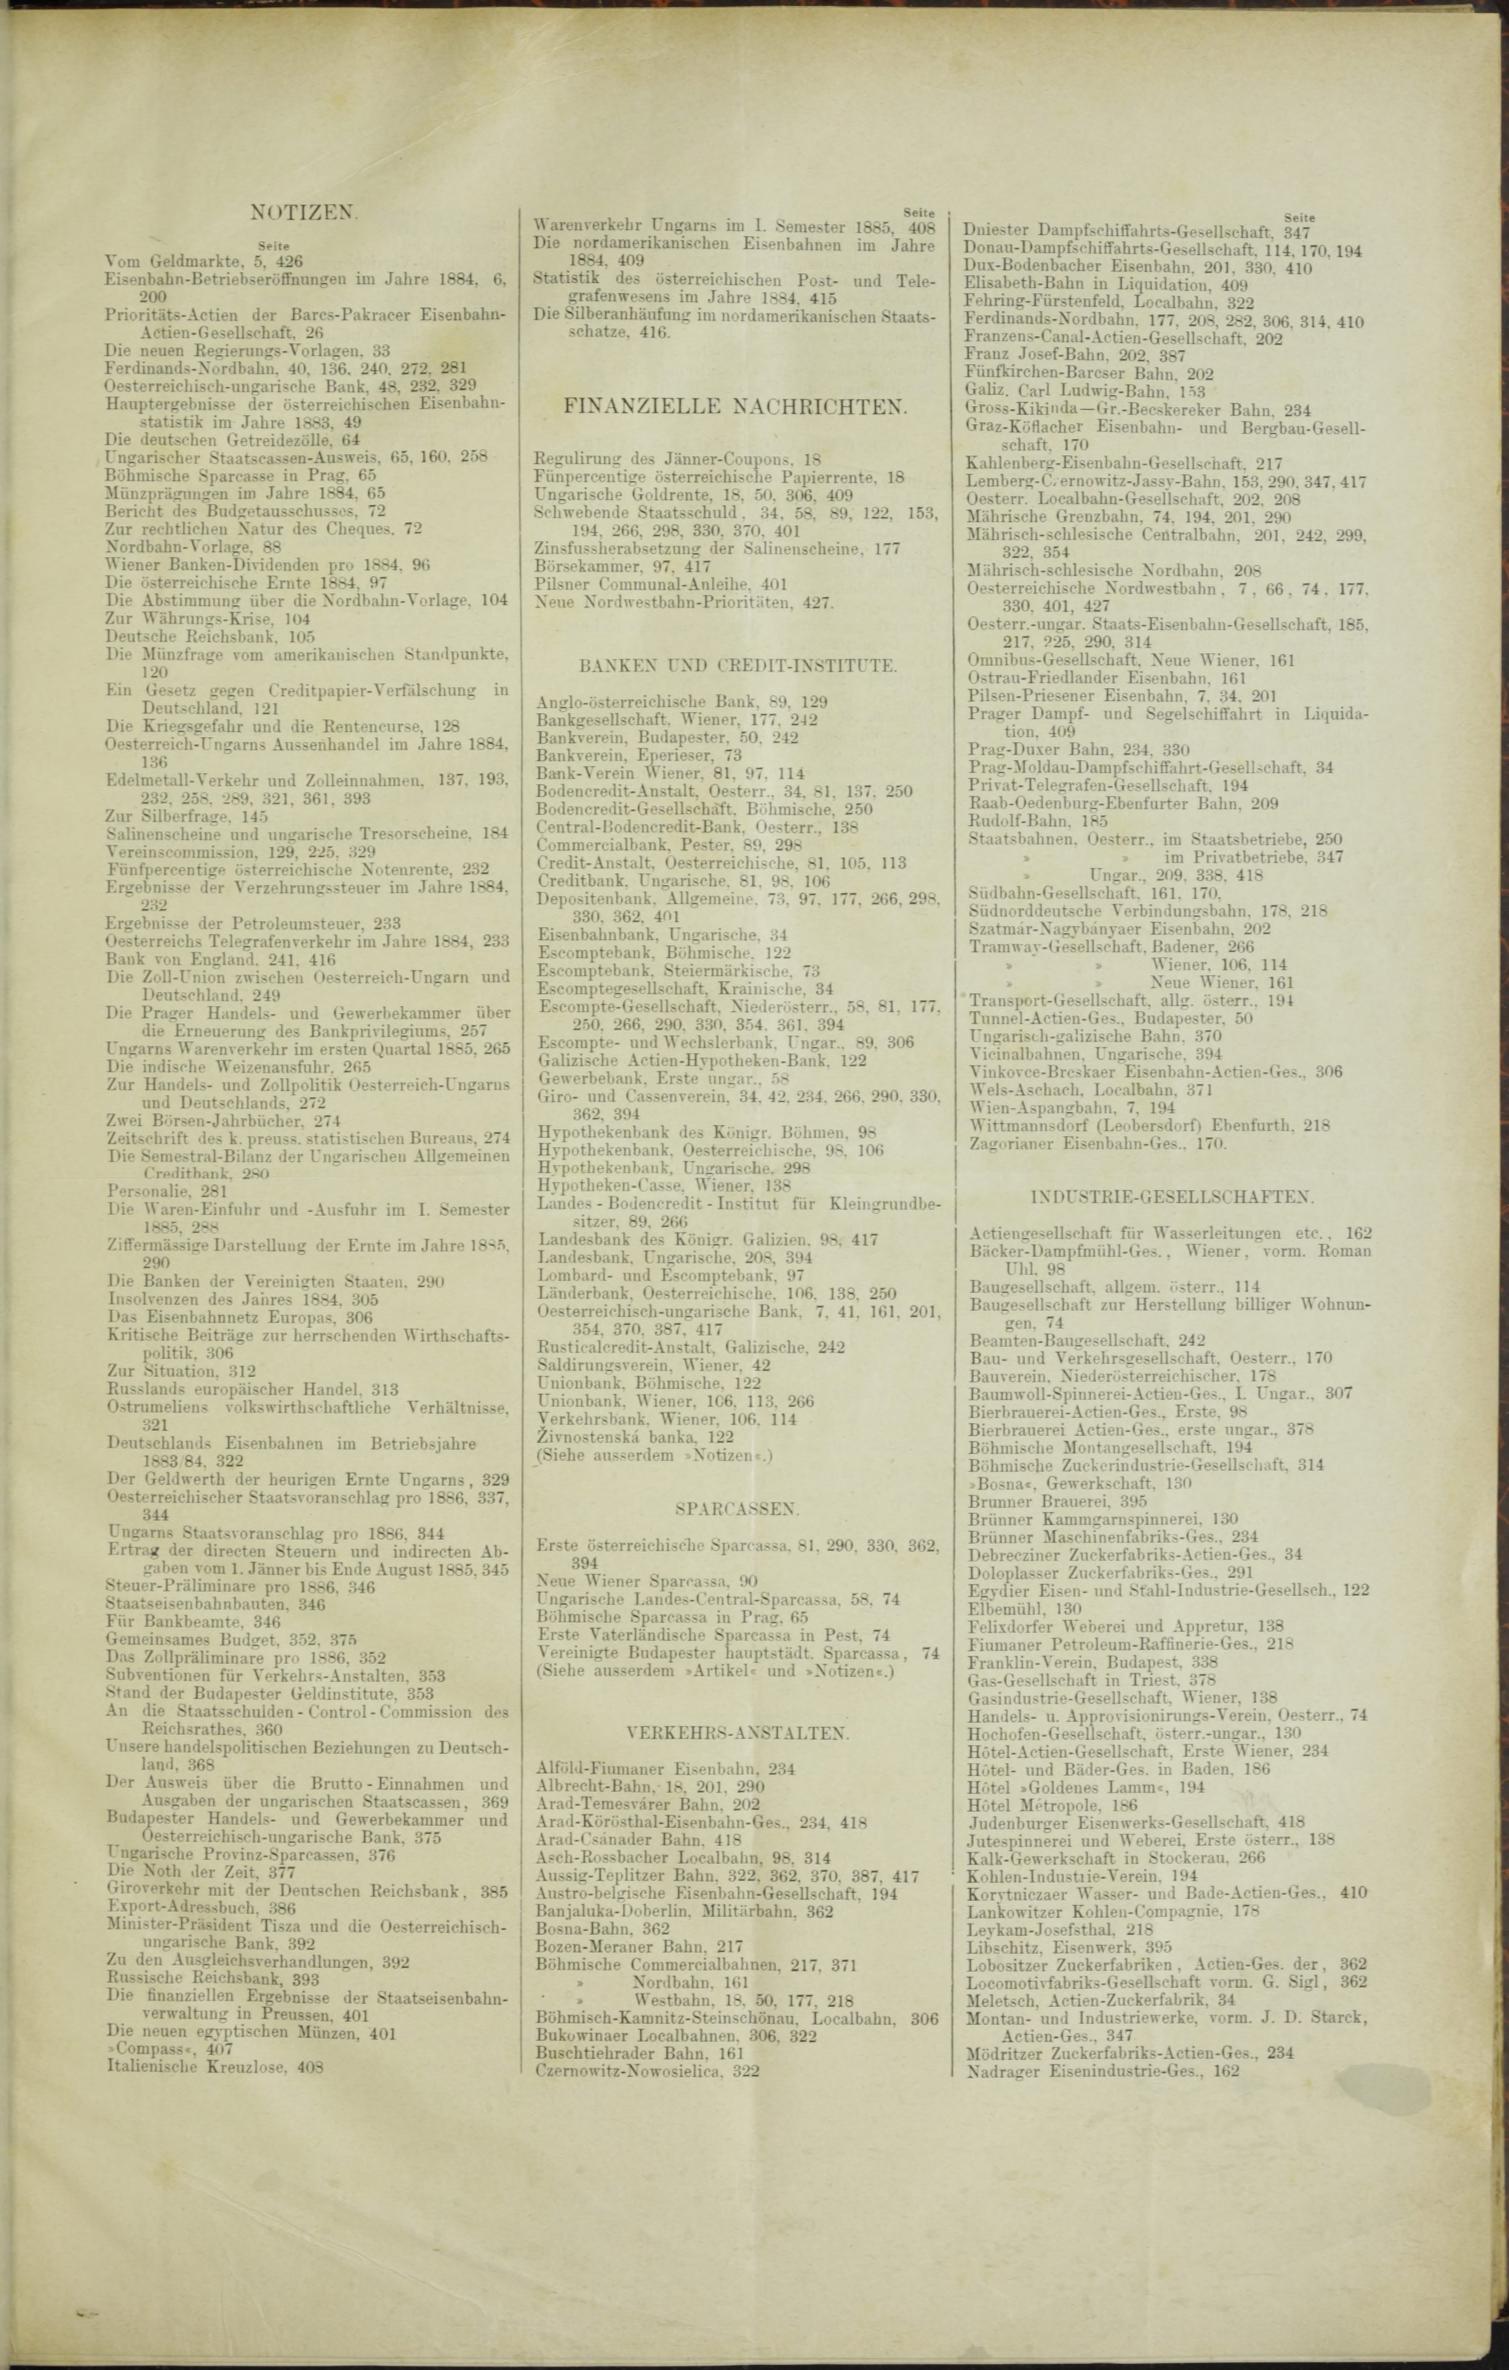 Der Tresor 19.03.1885 - Seite 11